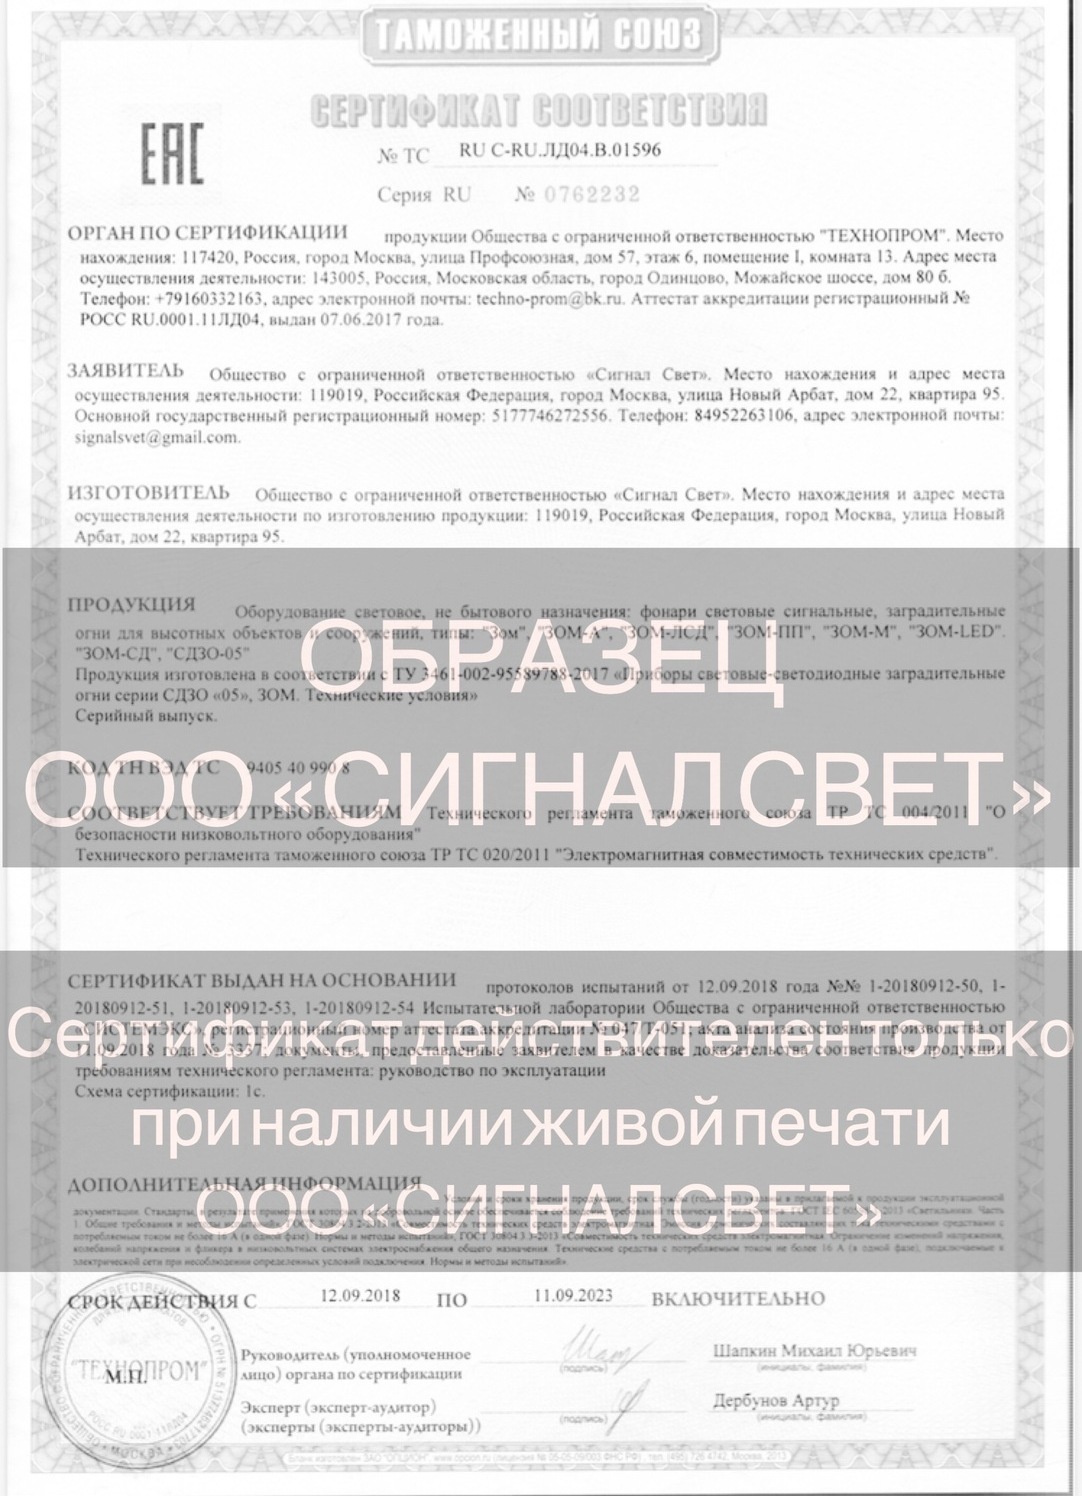 Сертификат соответствия ТР ТС на световые приборы СДЗО 05 и ЗОМ